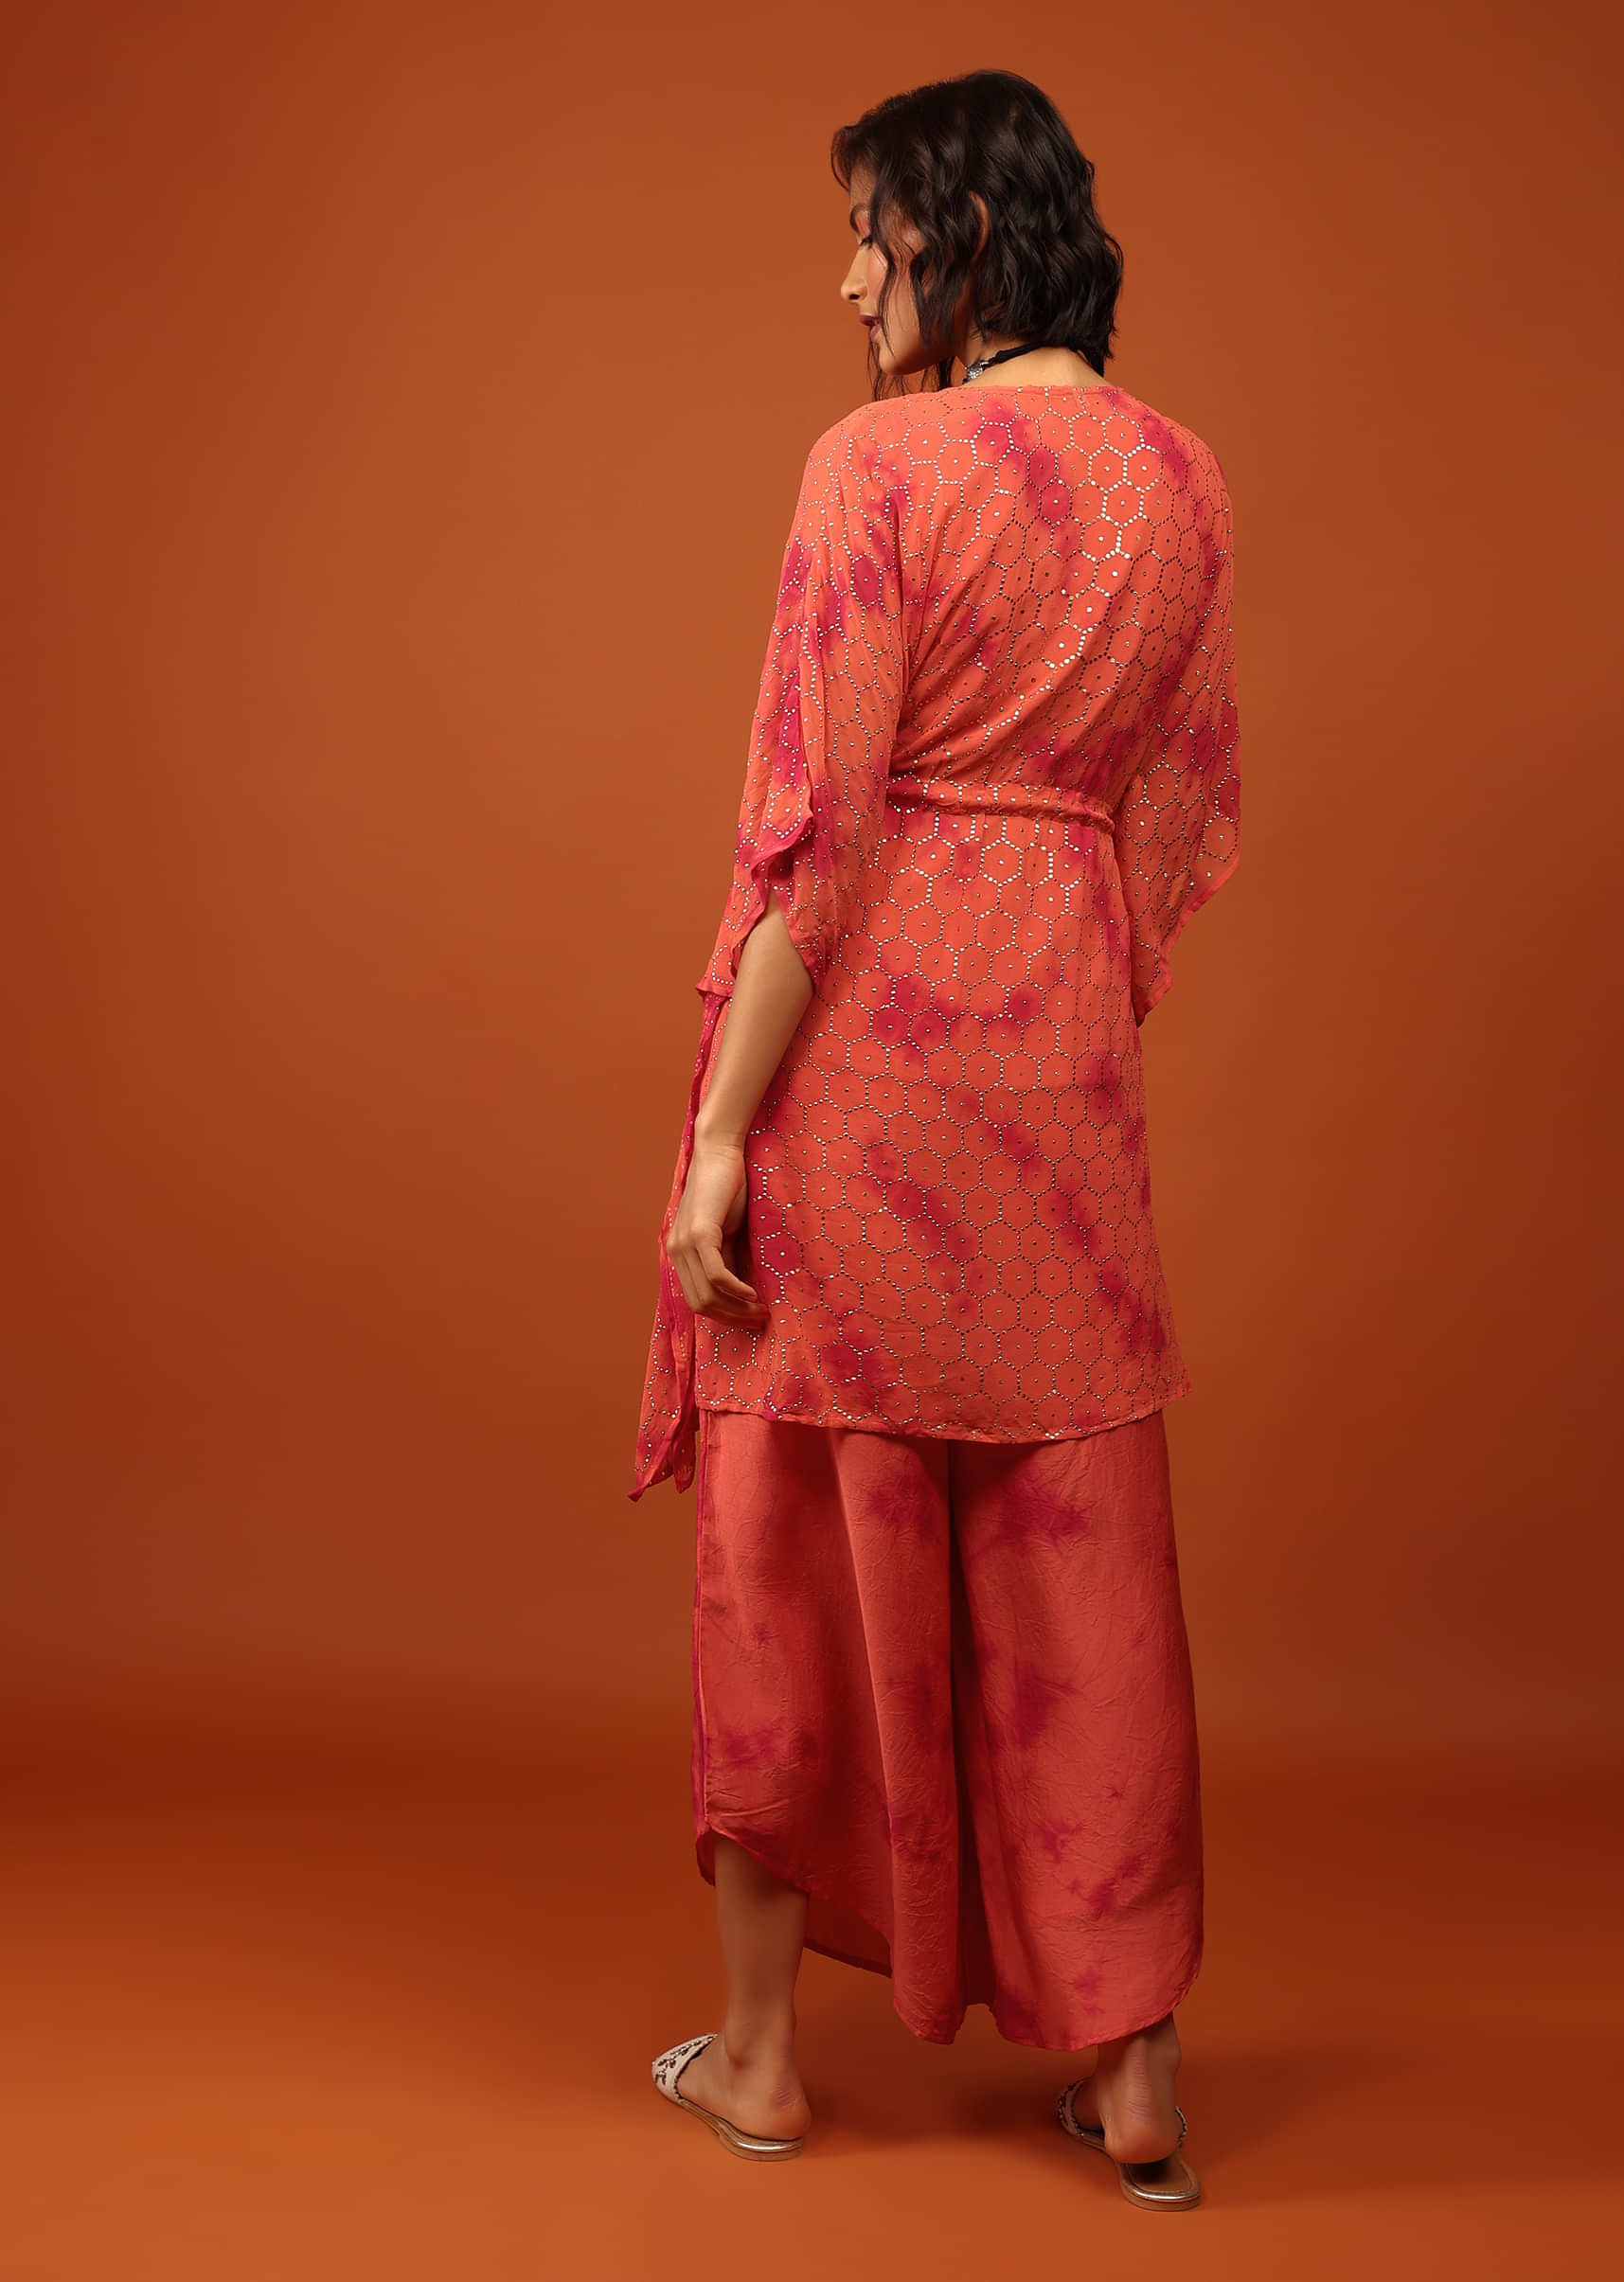 Fire Orange Tie Dye Kaftan Set In V Neckline With A Tie-Up Tassel Dori At The Front